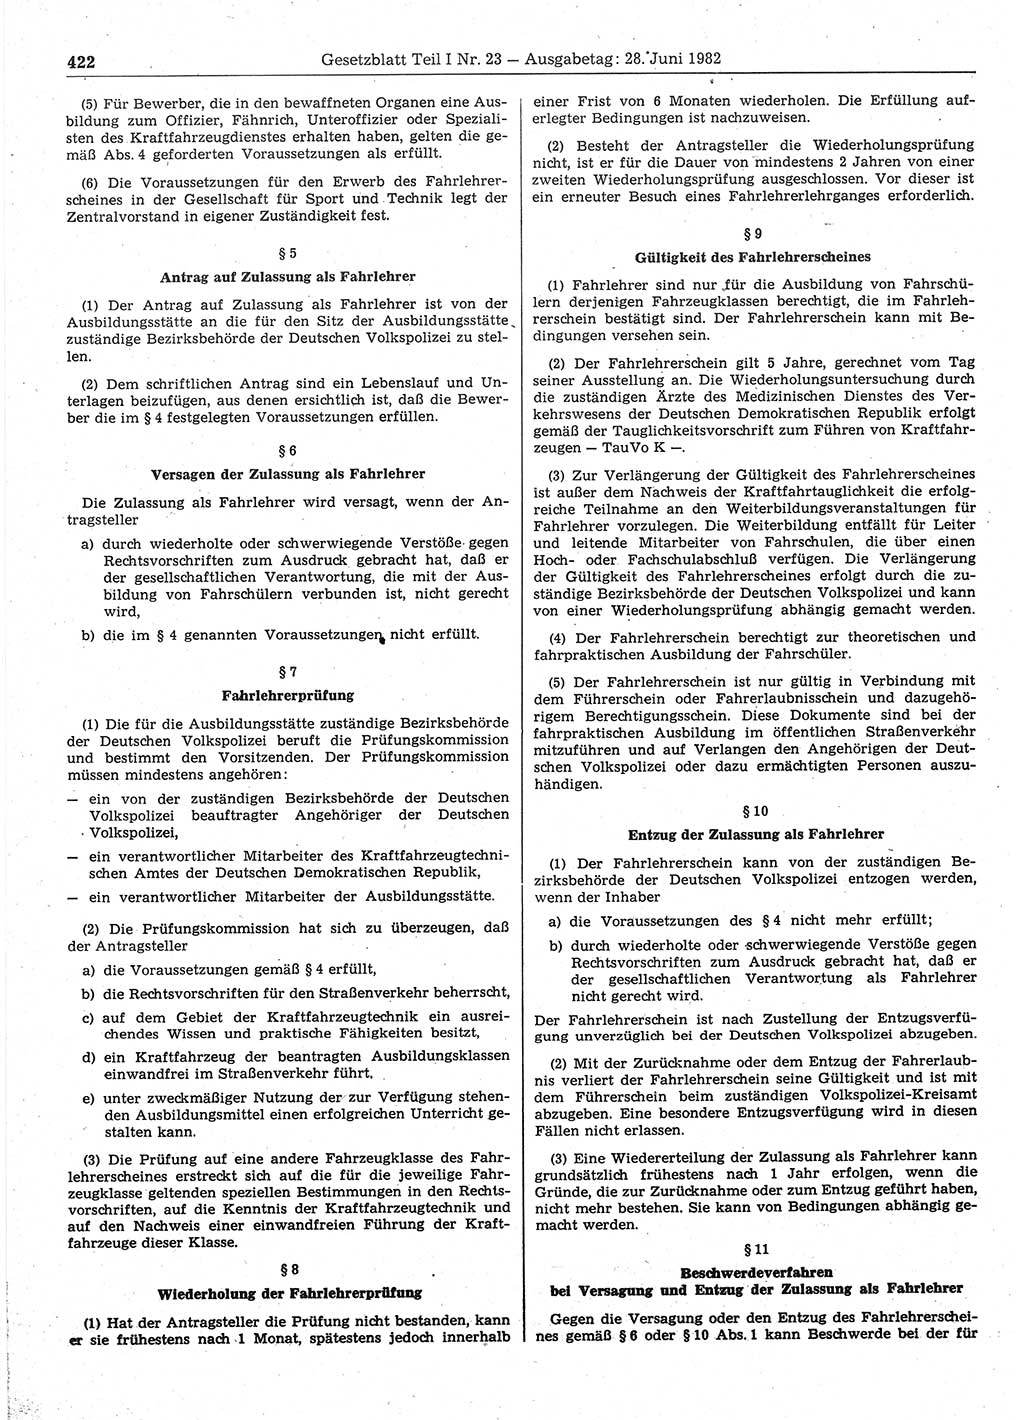 Gesetzblatt (GBl.) der Deutschen Demokratischen Republik (DDR) Teil Ⅰ 1982, Seite 422 (GBl. DDR Ⅰ 1982, S. 422)